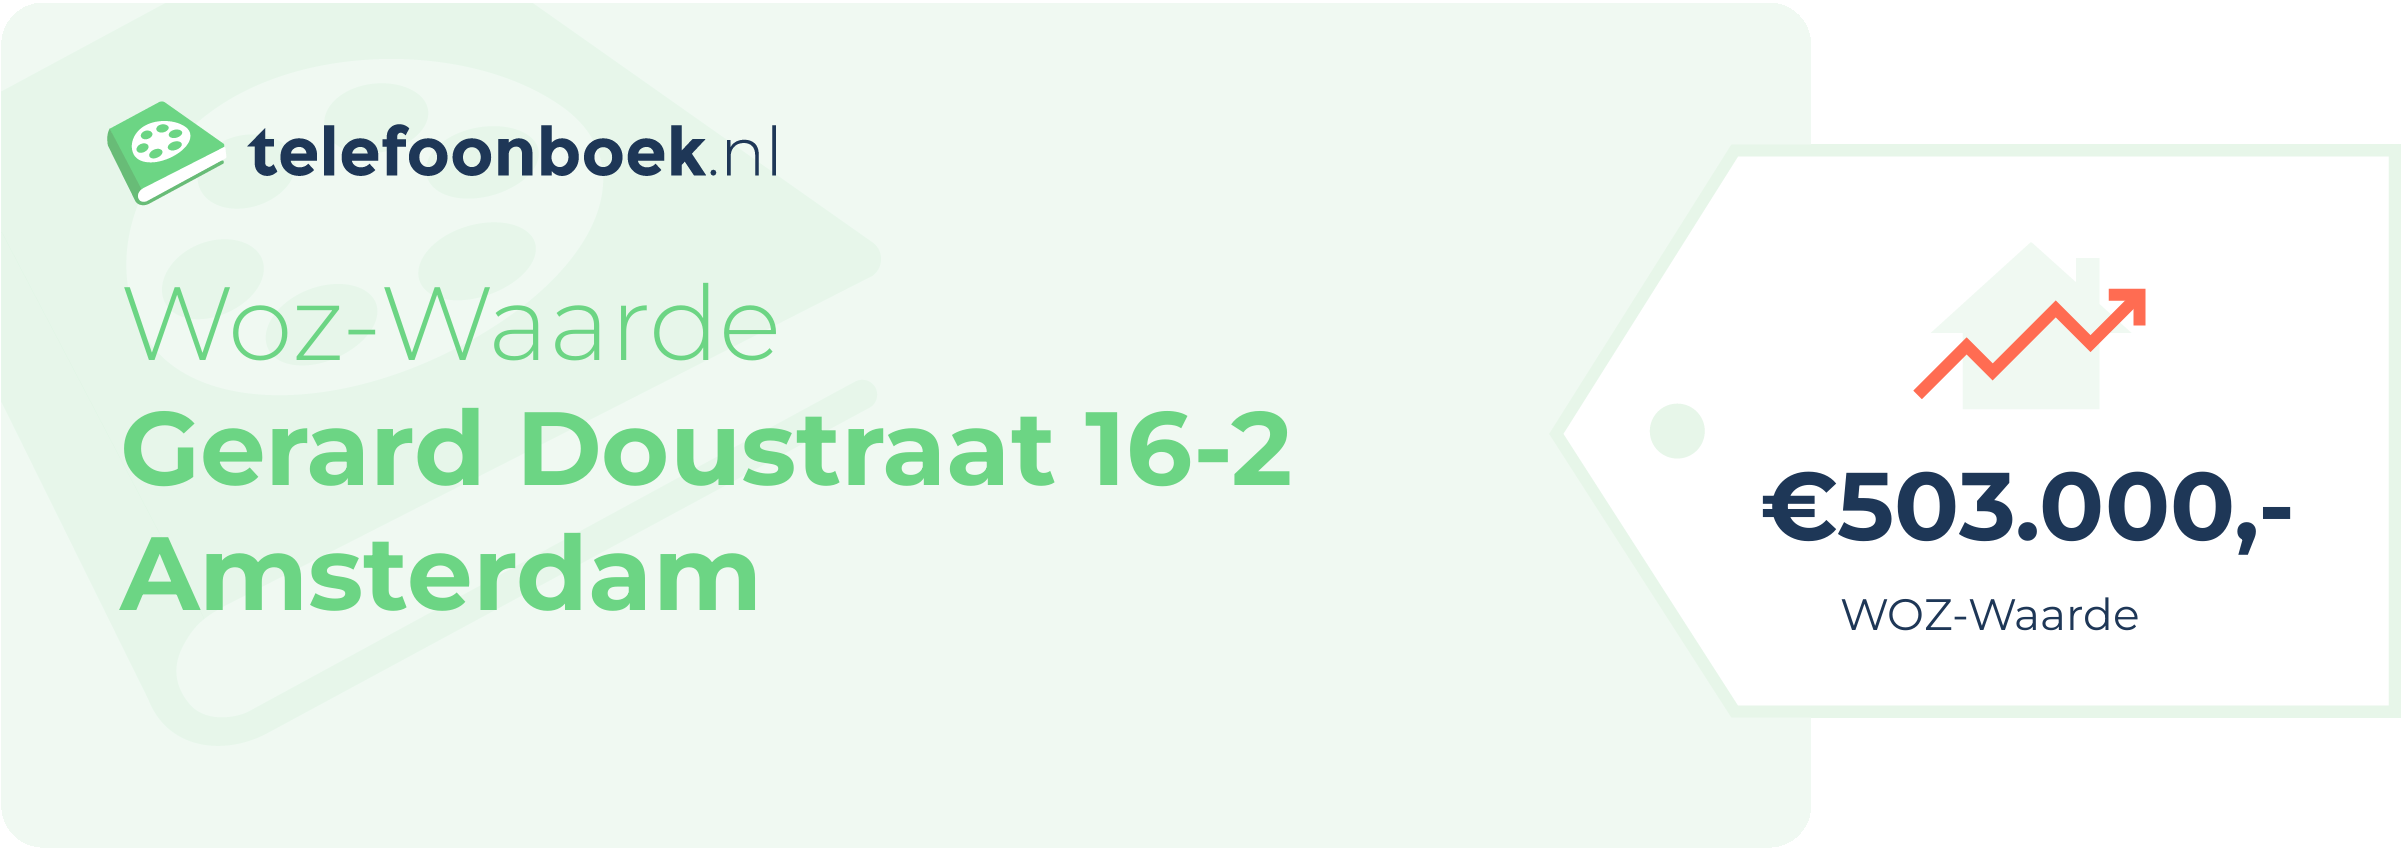 WOZ-waarde Gerard Doustraat 16-2 Amsterdam